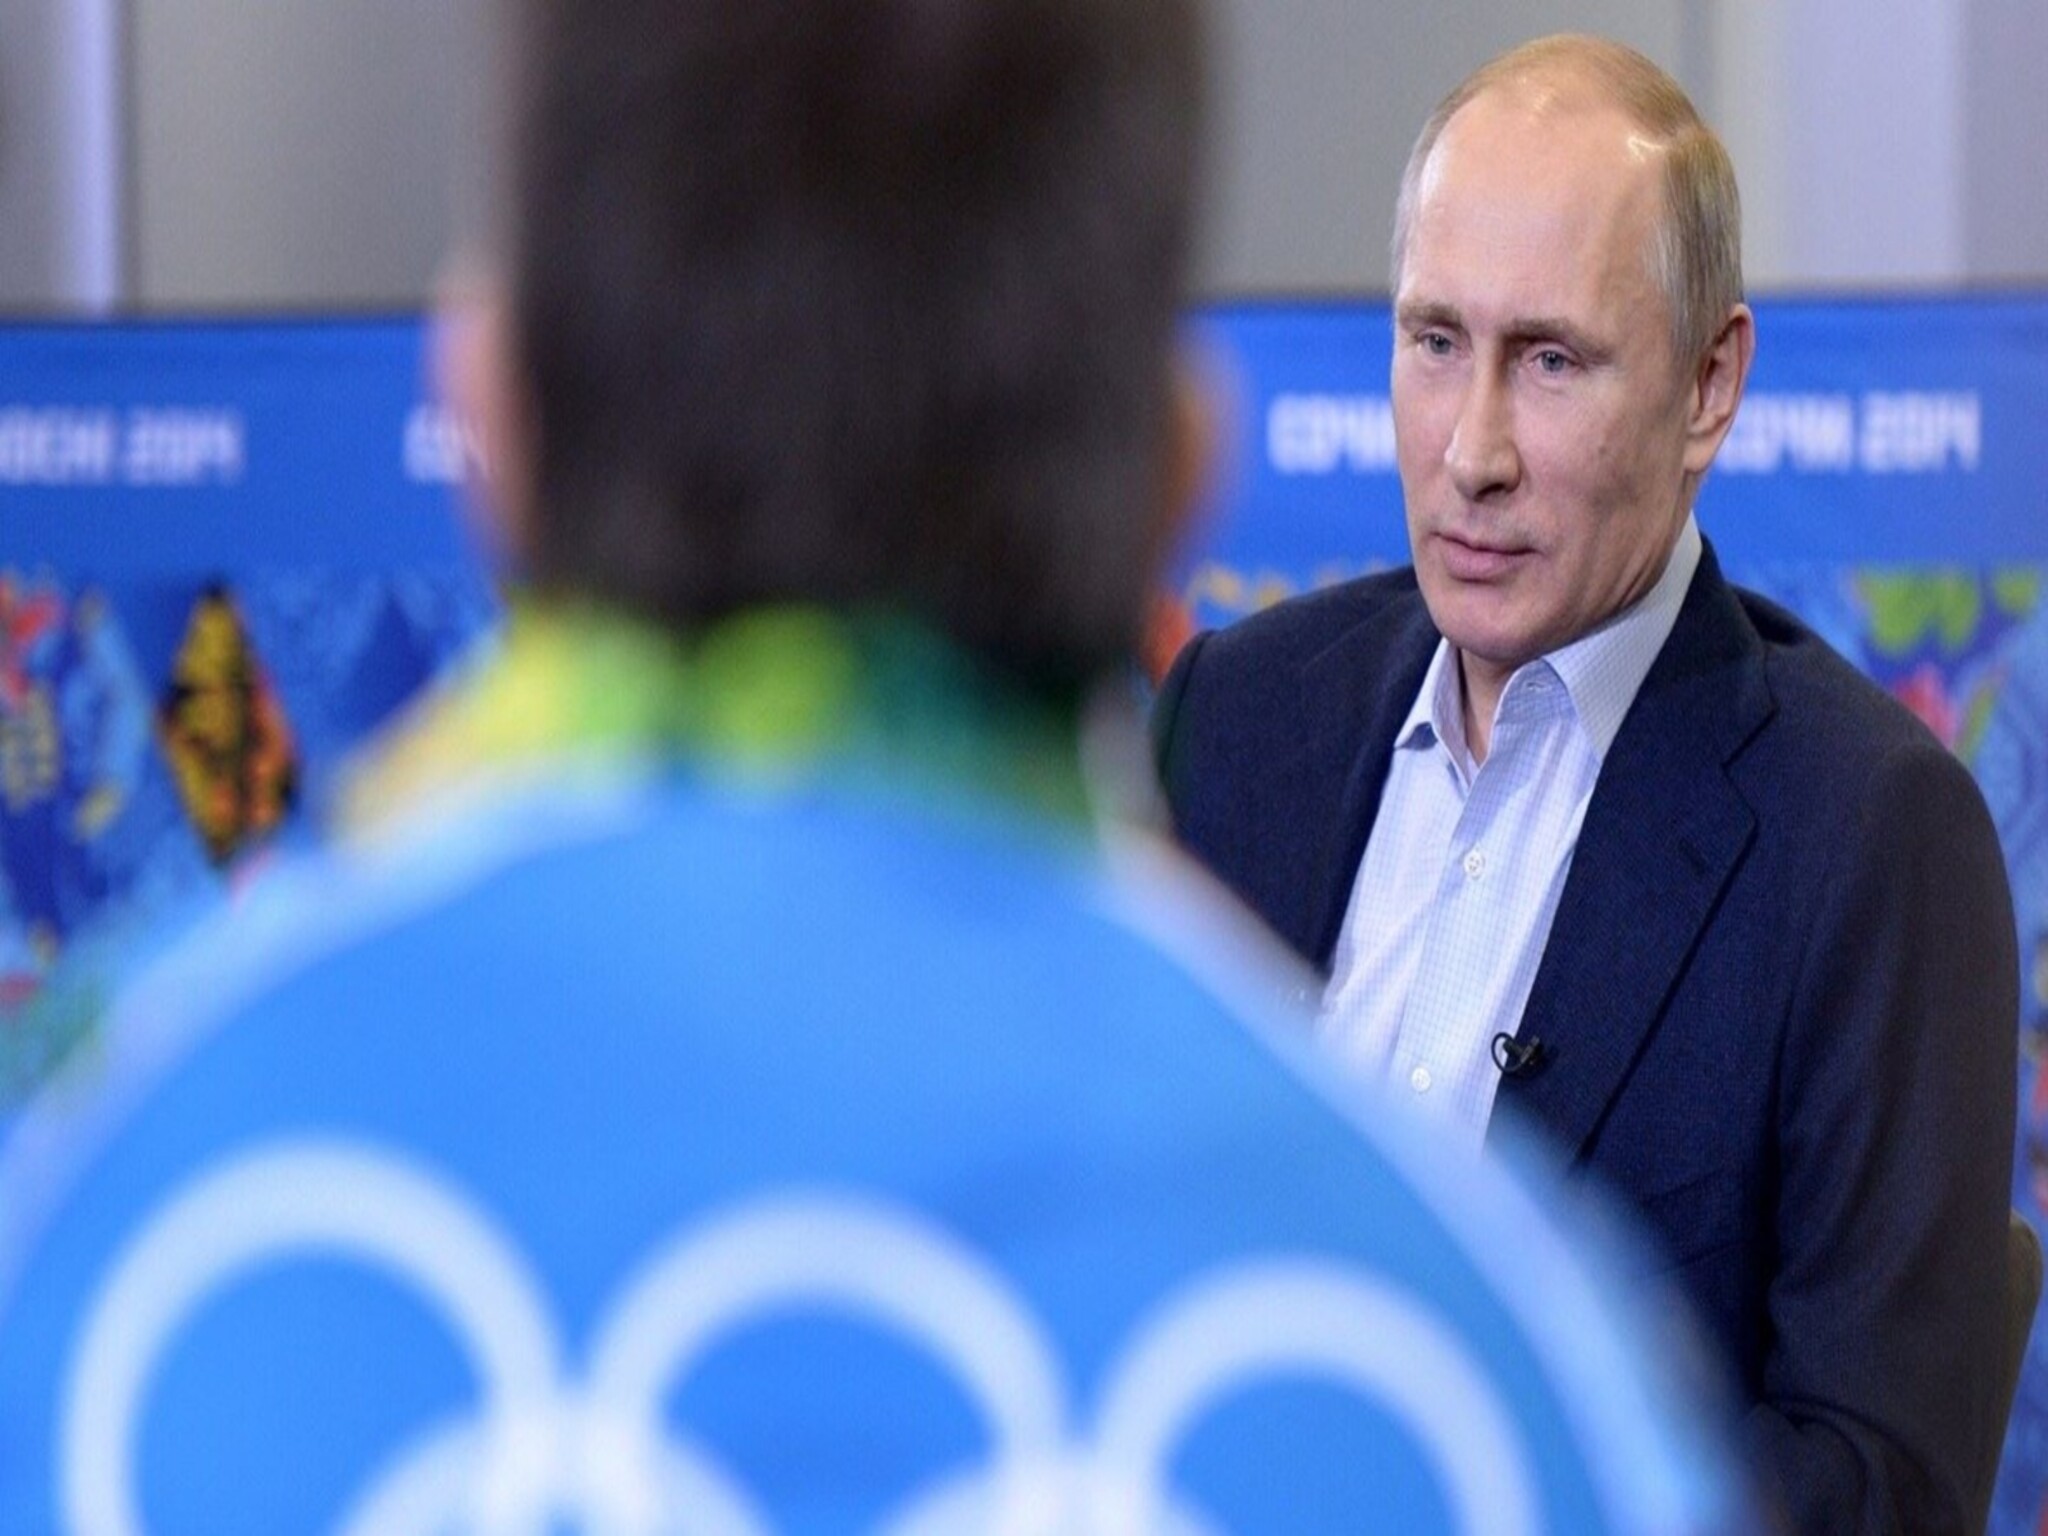 بوتين .. موقف اللجنة الأولمبية تجاه رياضيين روس تمييز عرقي